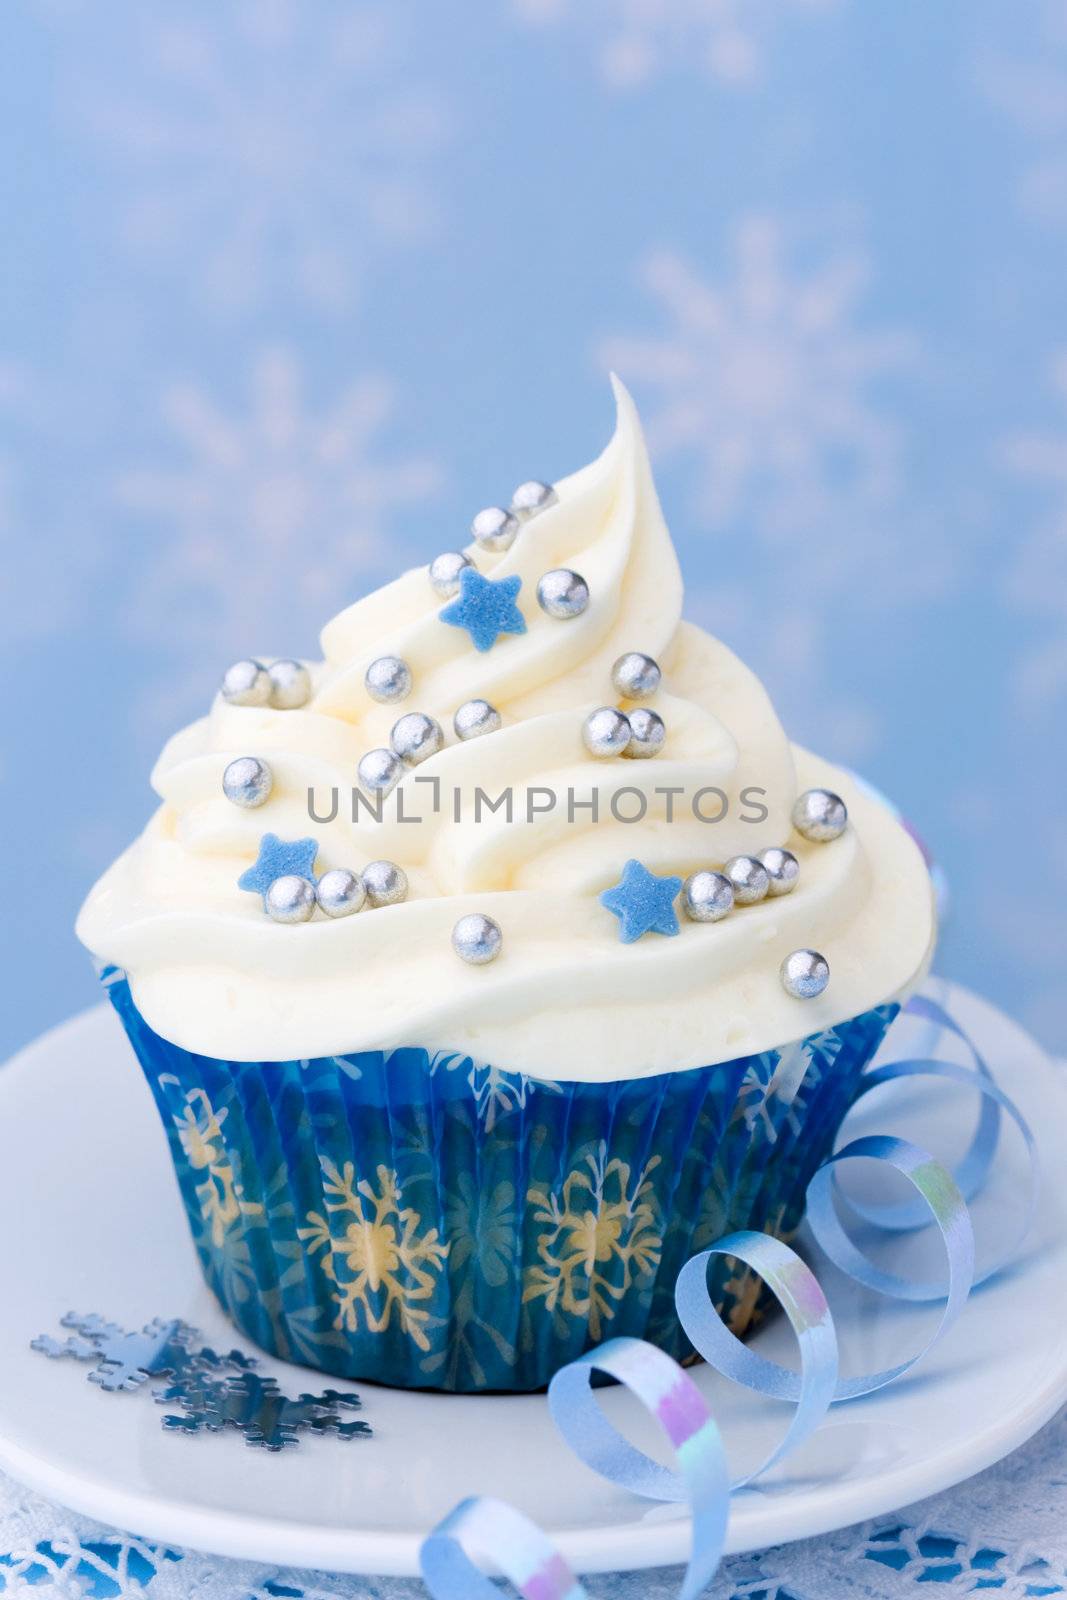 Cupcake by RuthBlack